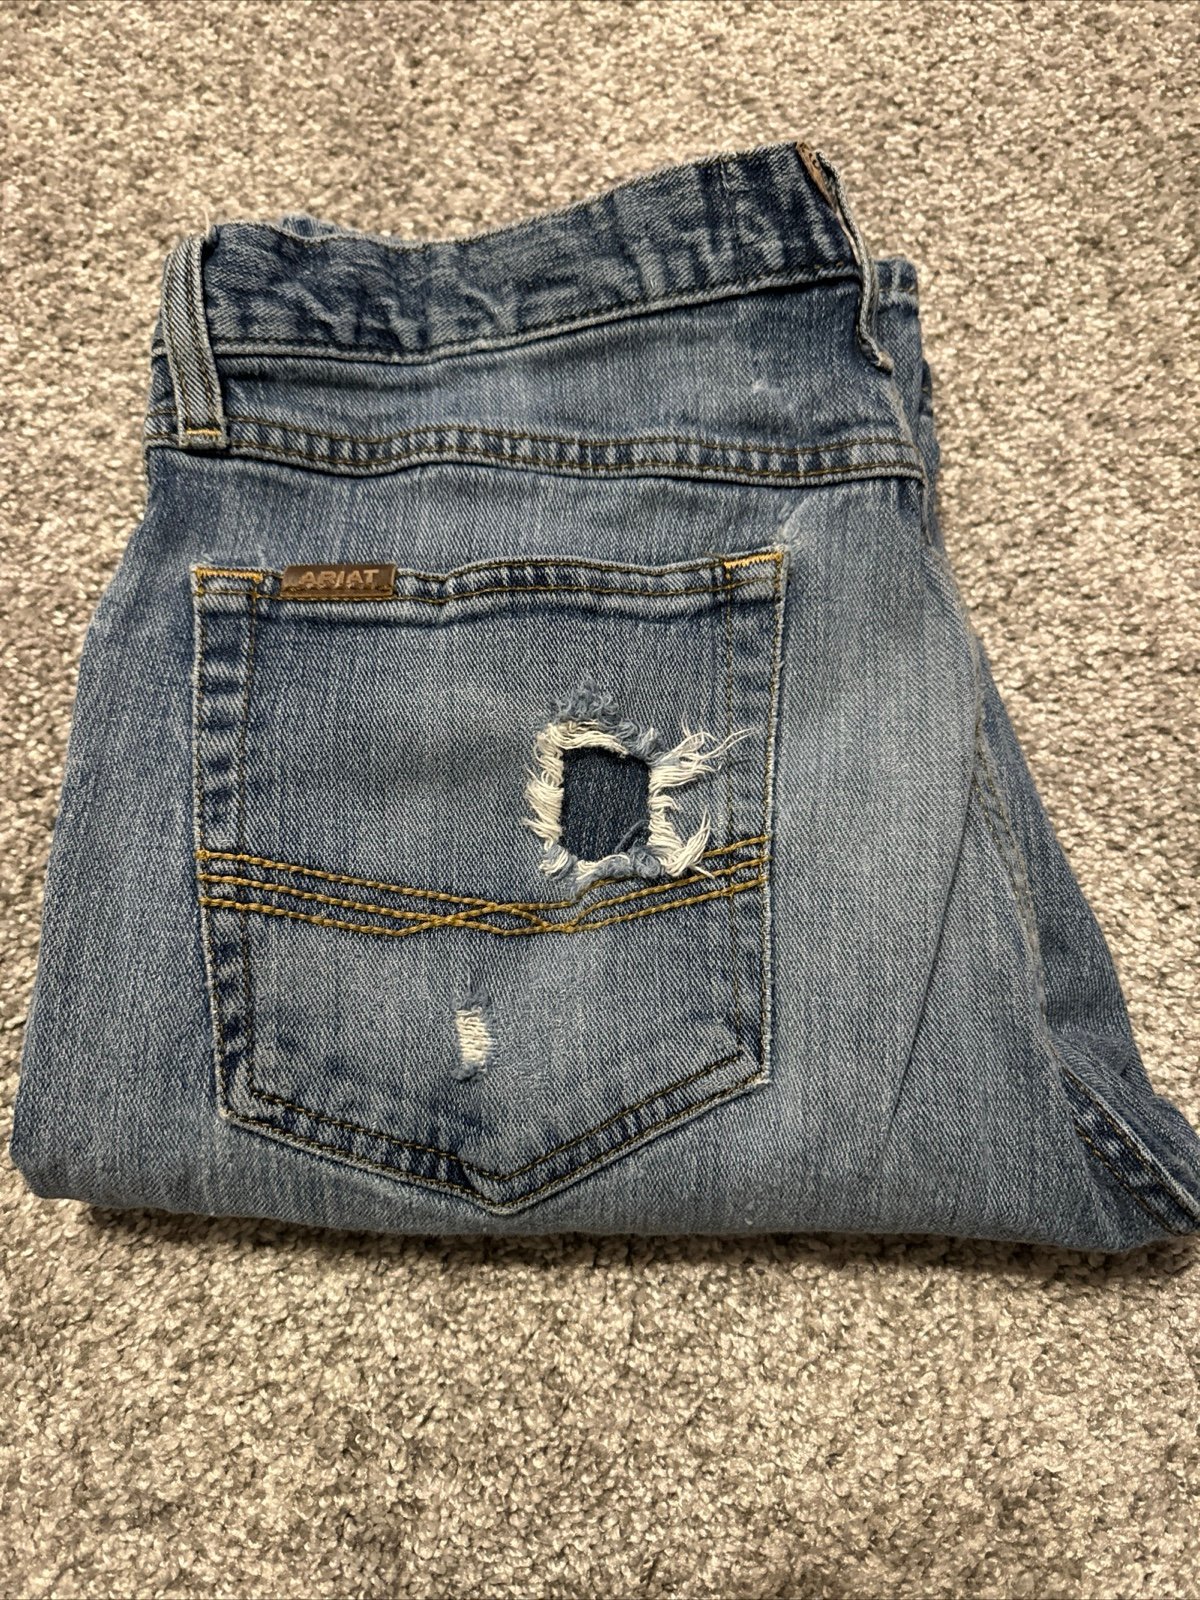 Ariat Jeans Men´s 32x34 Blue Pants M4 Low Rise Boo